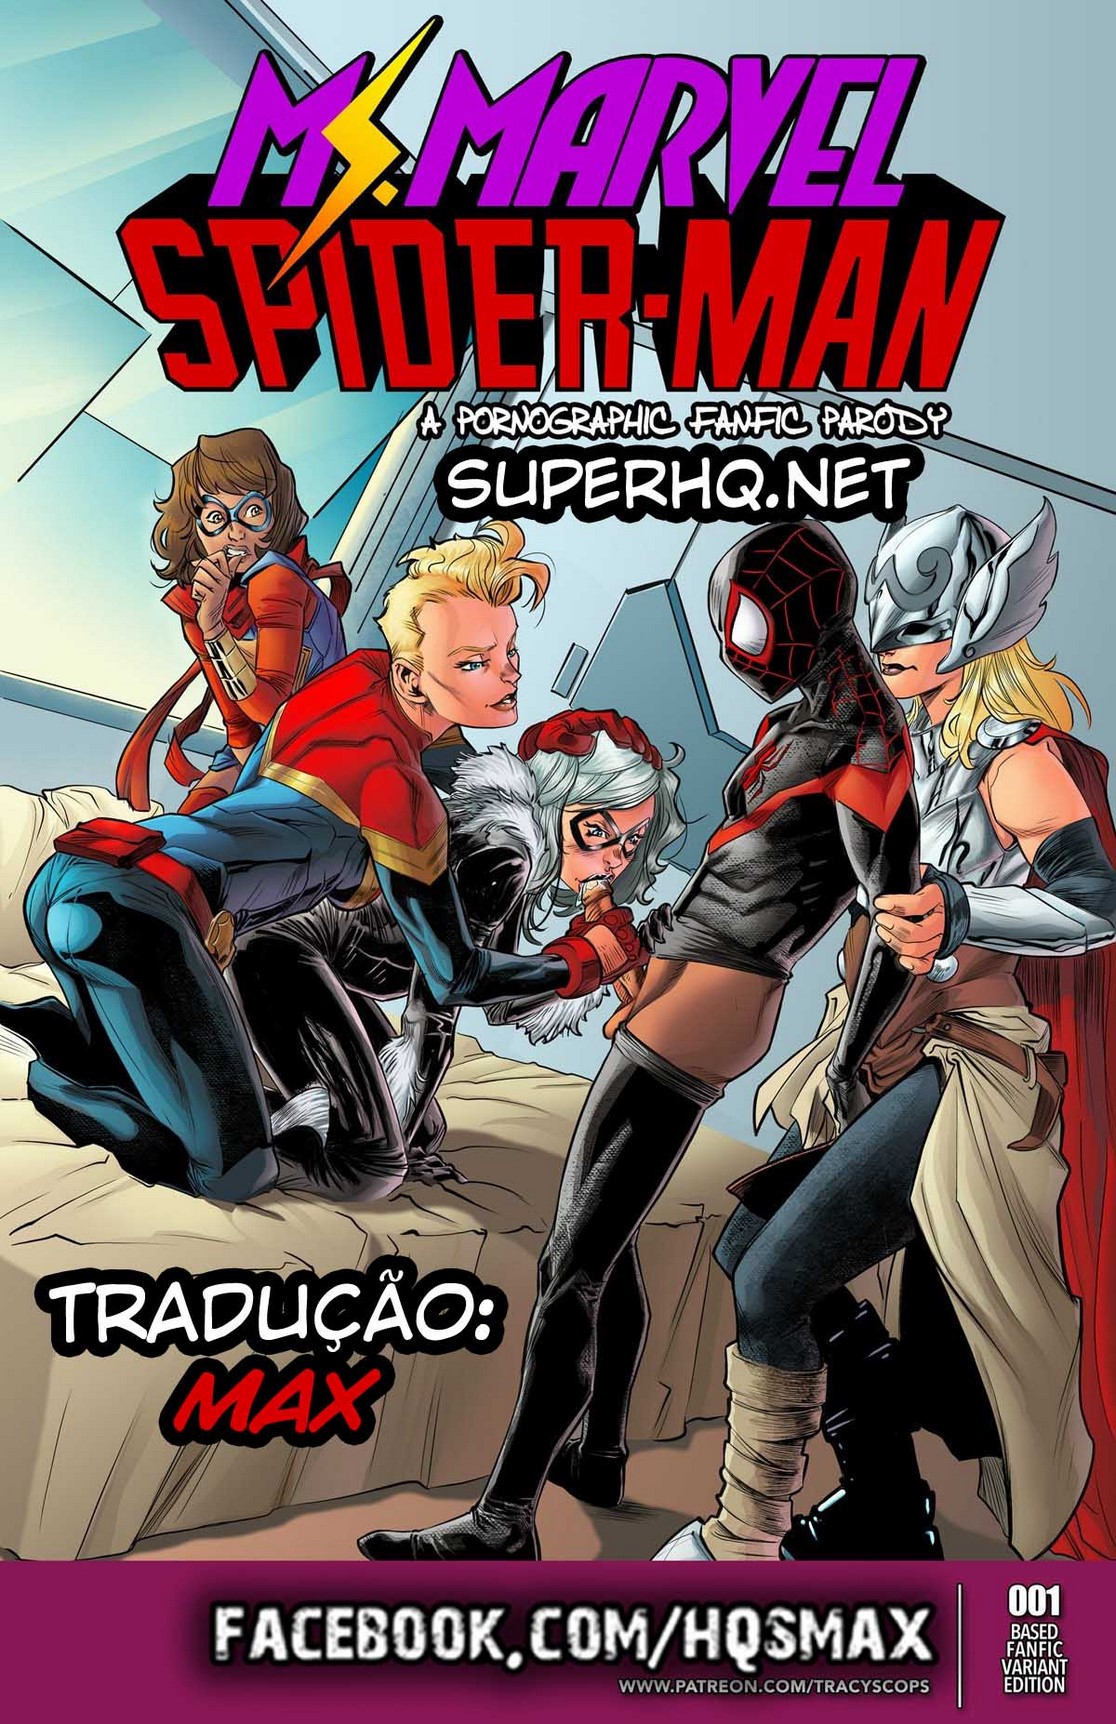 Revista em quadrinhos de sexo com super herois